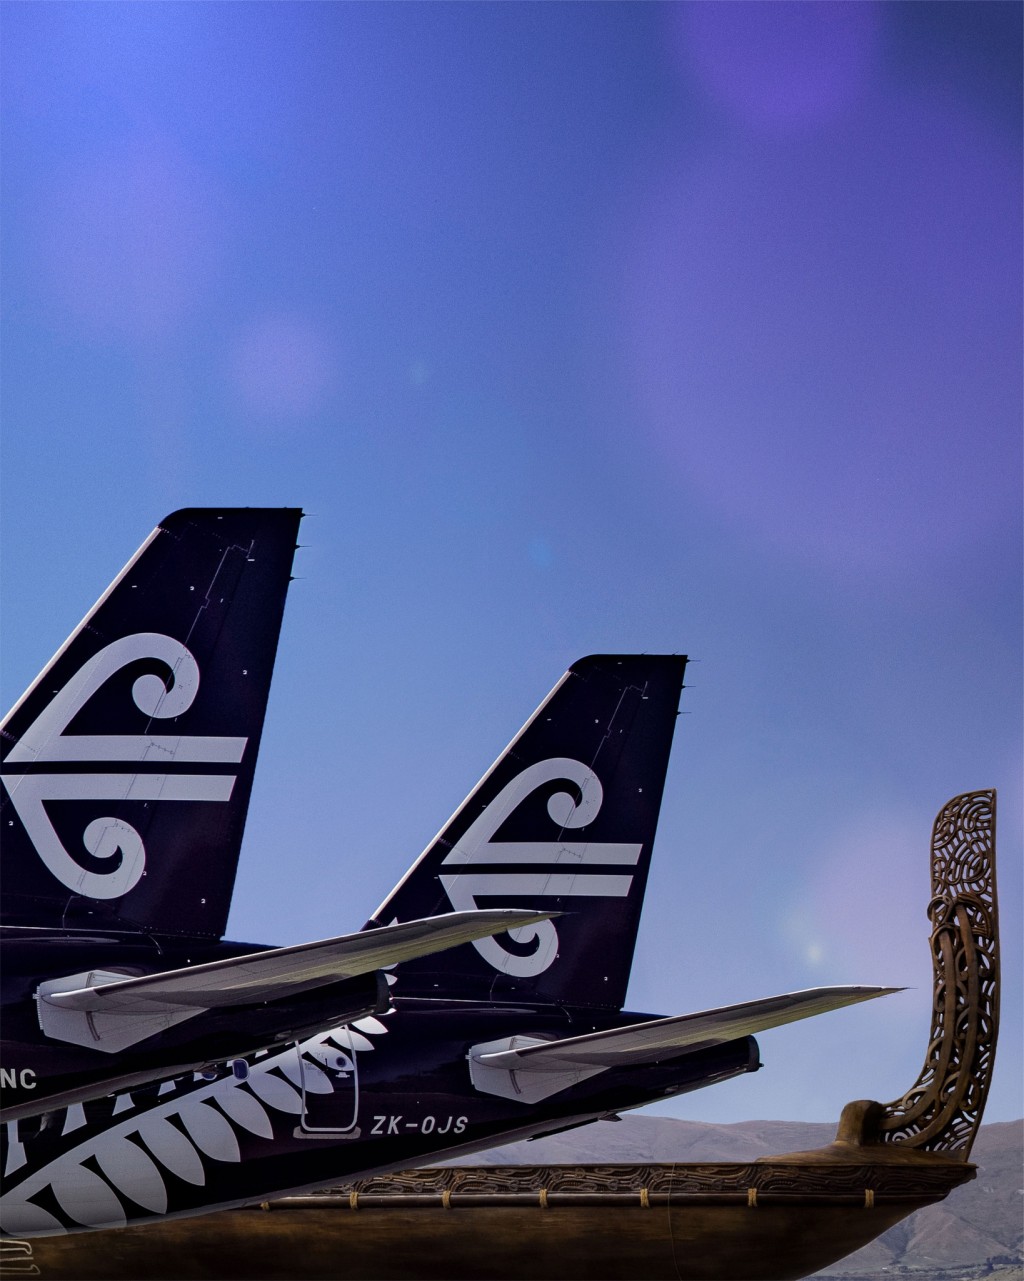 「舒眠舱」服务将在长机上提供。(Air New Zealand facebook)